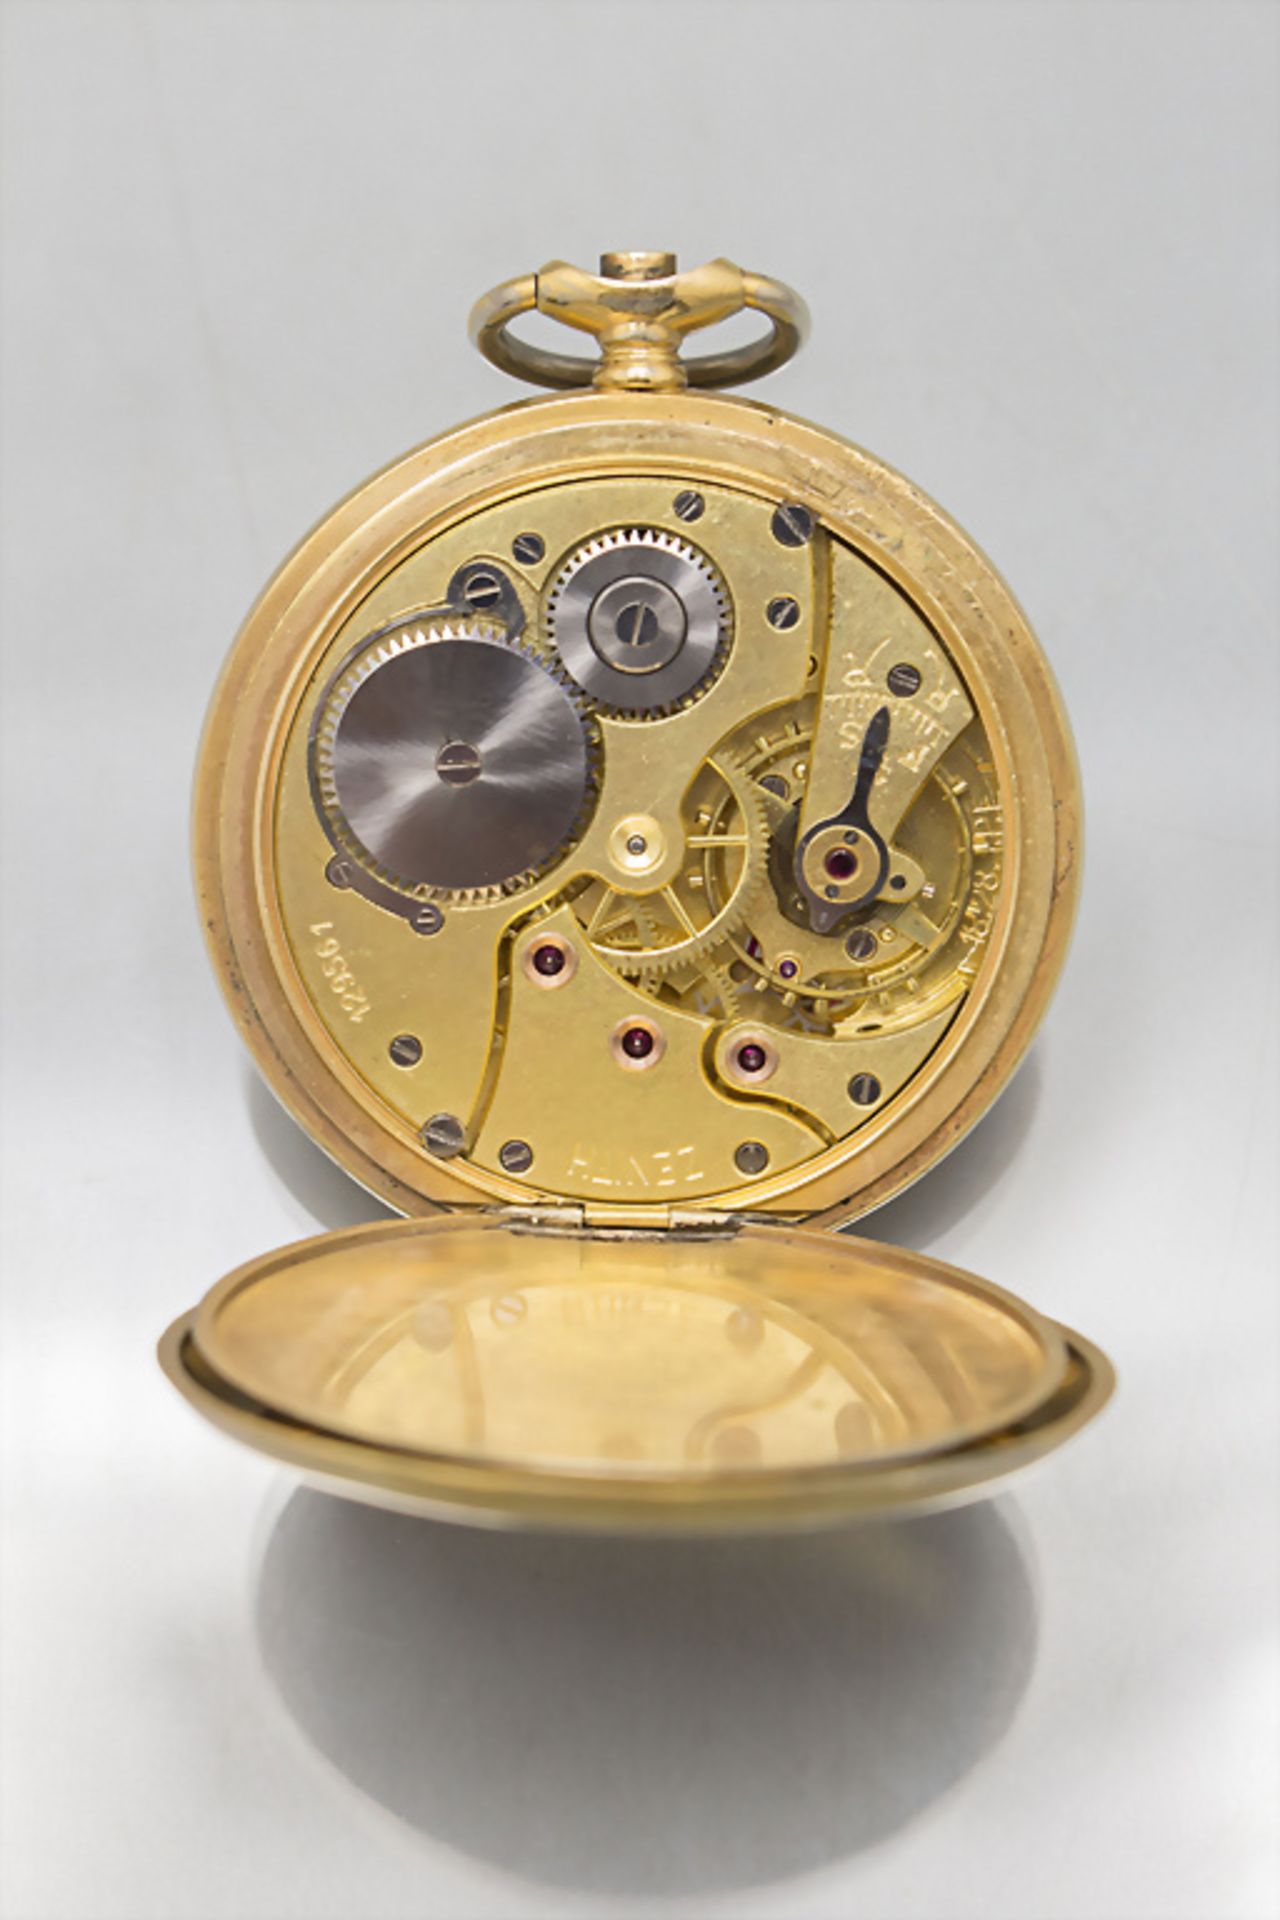 Taschenuhr mit 14 Kt Gold Kette / A pocket watch with a 14 ct gold chain, Zenith, Swiss, um 1950 - Image 6 of 6